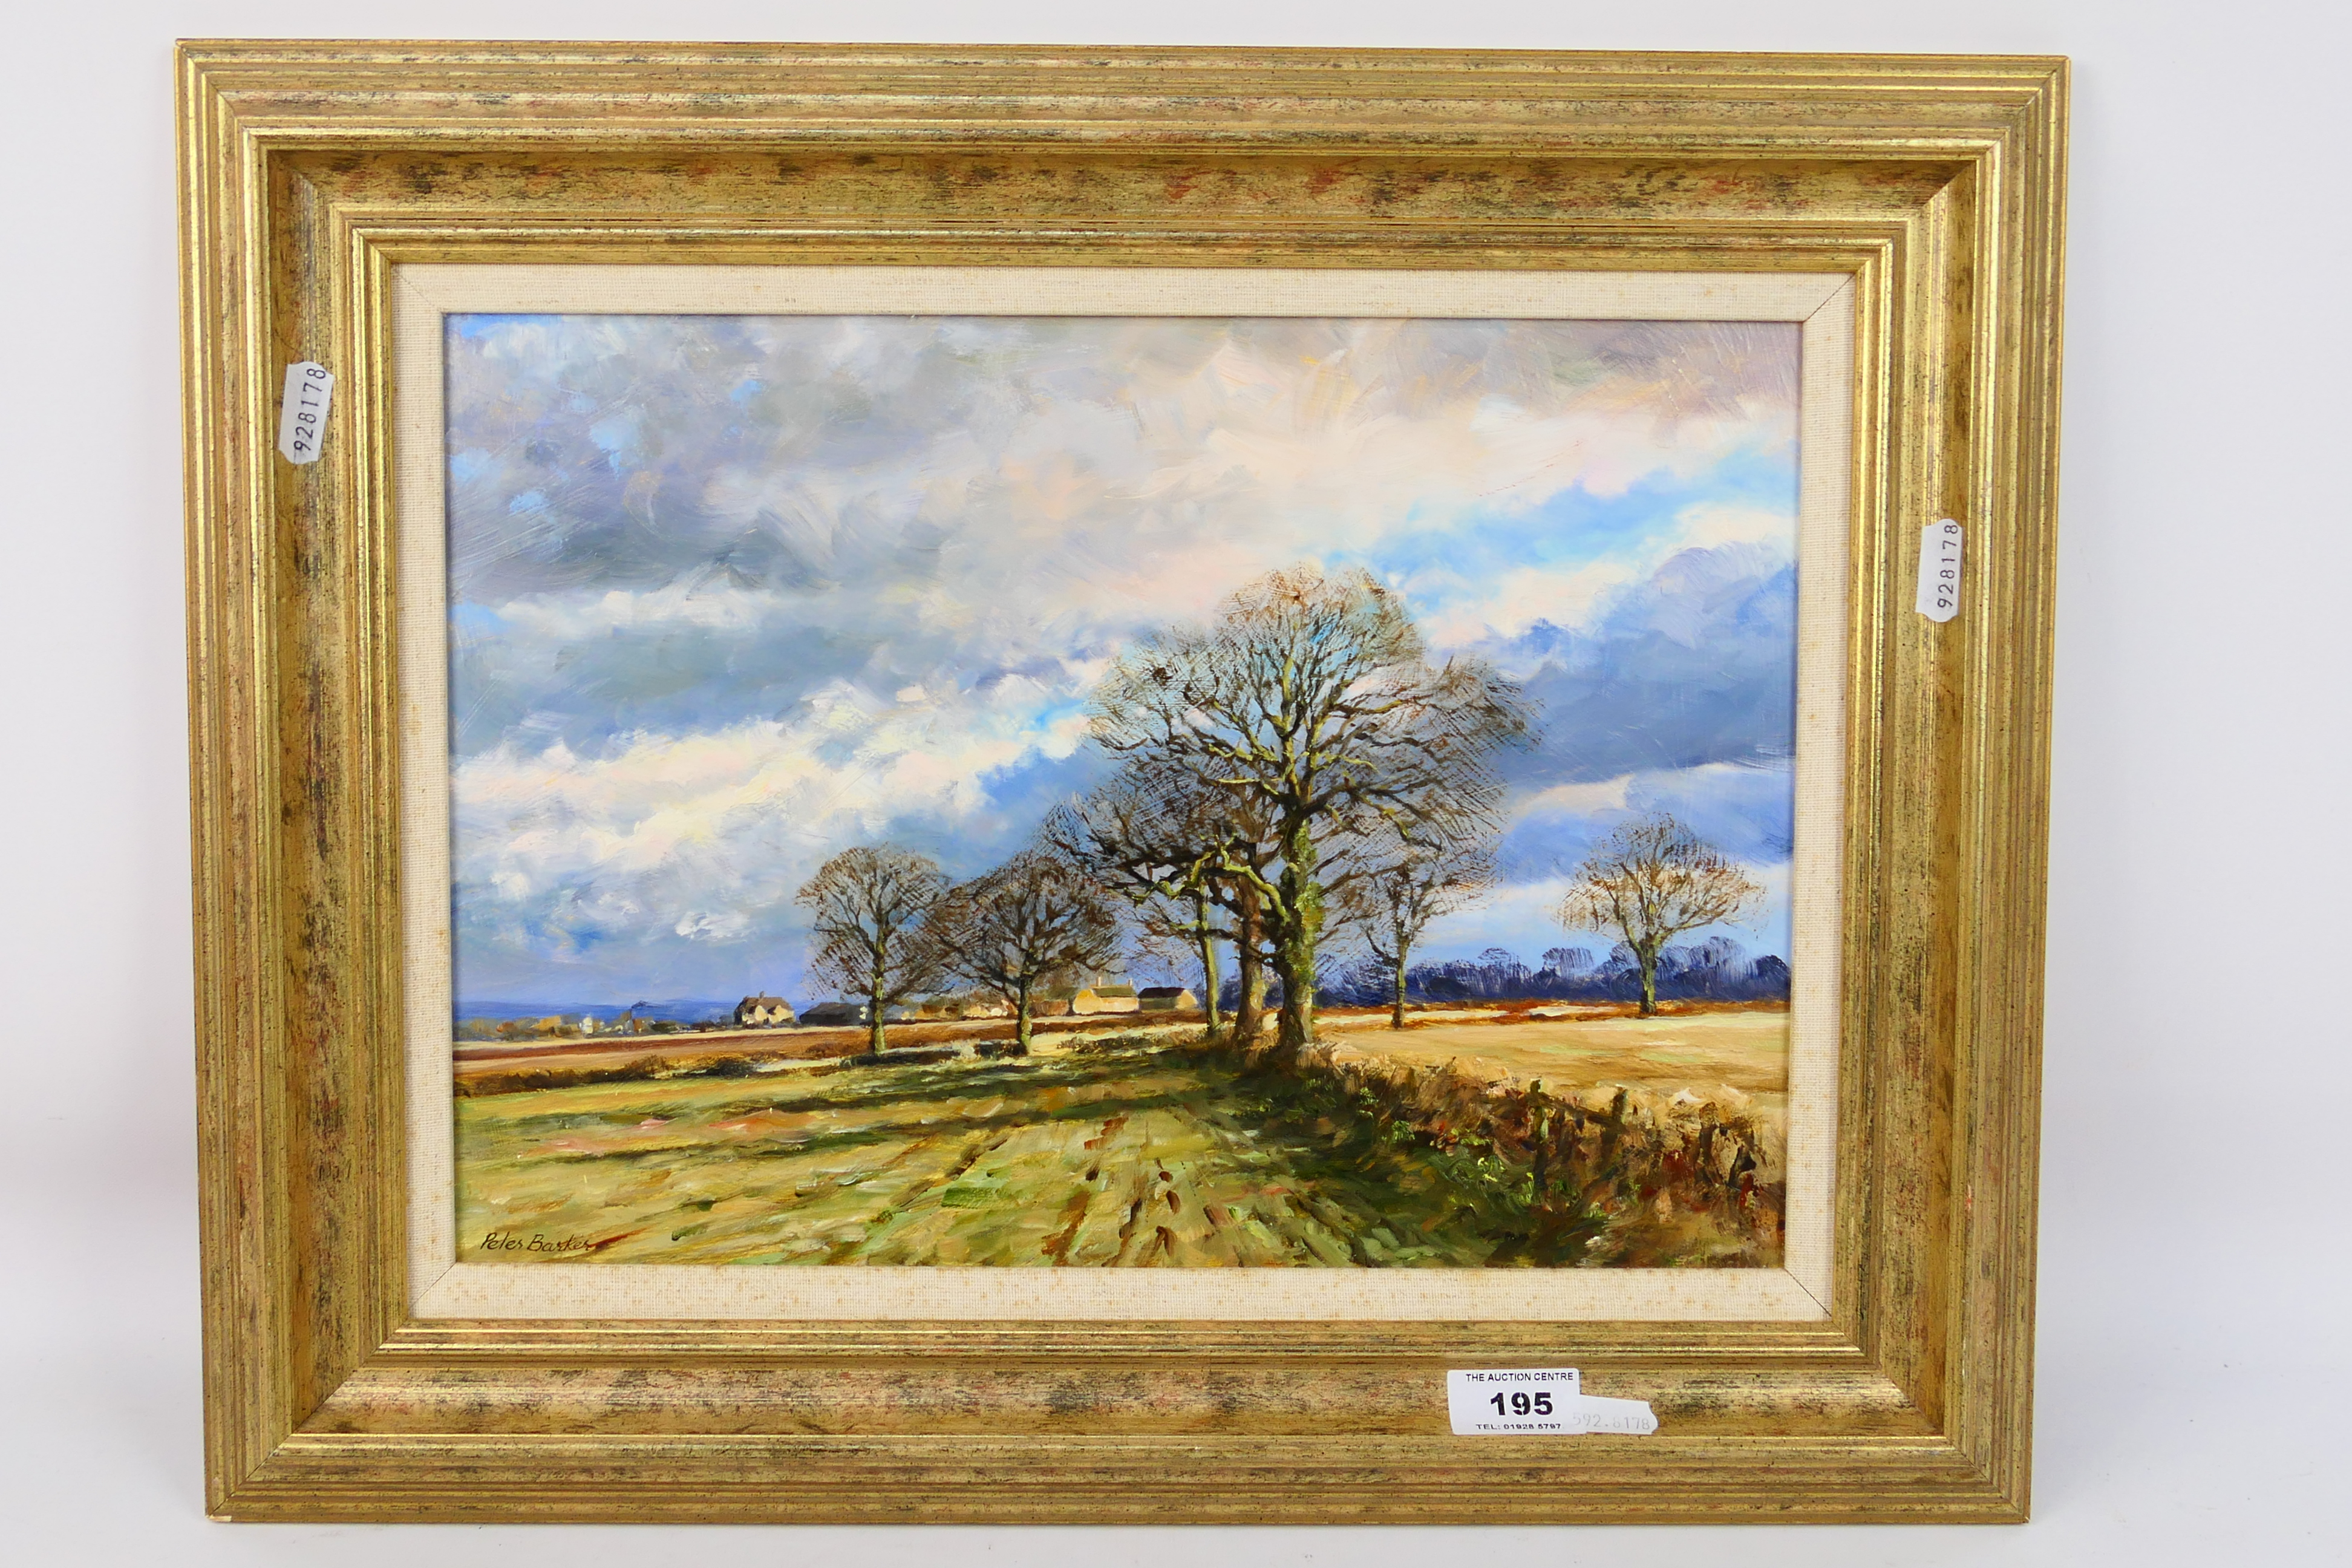 Peter Barker RSMA - A framed oil on board landscape scene, titled verso Blustery Day,